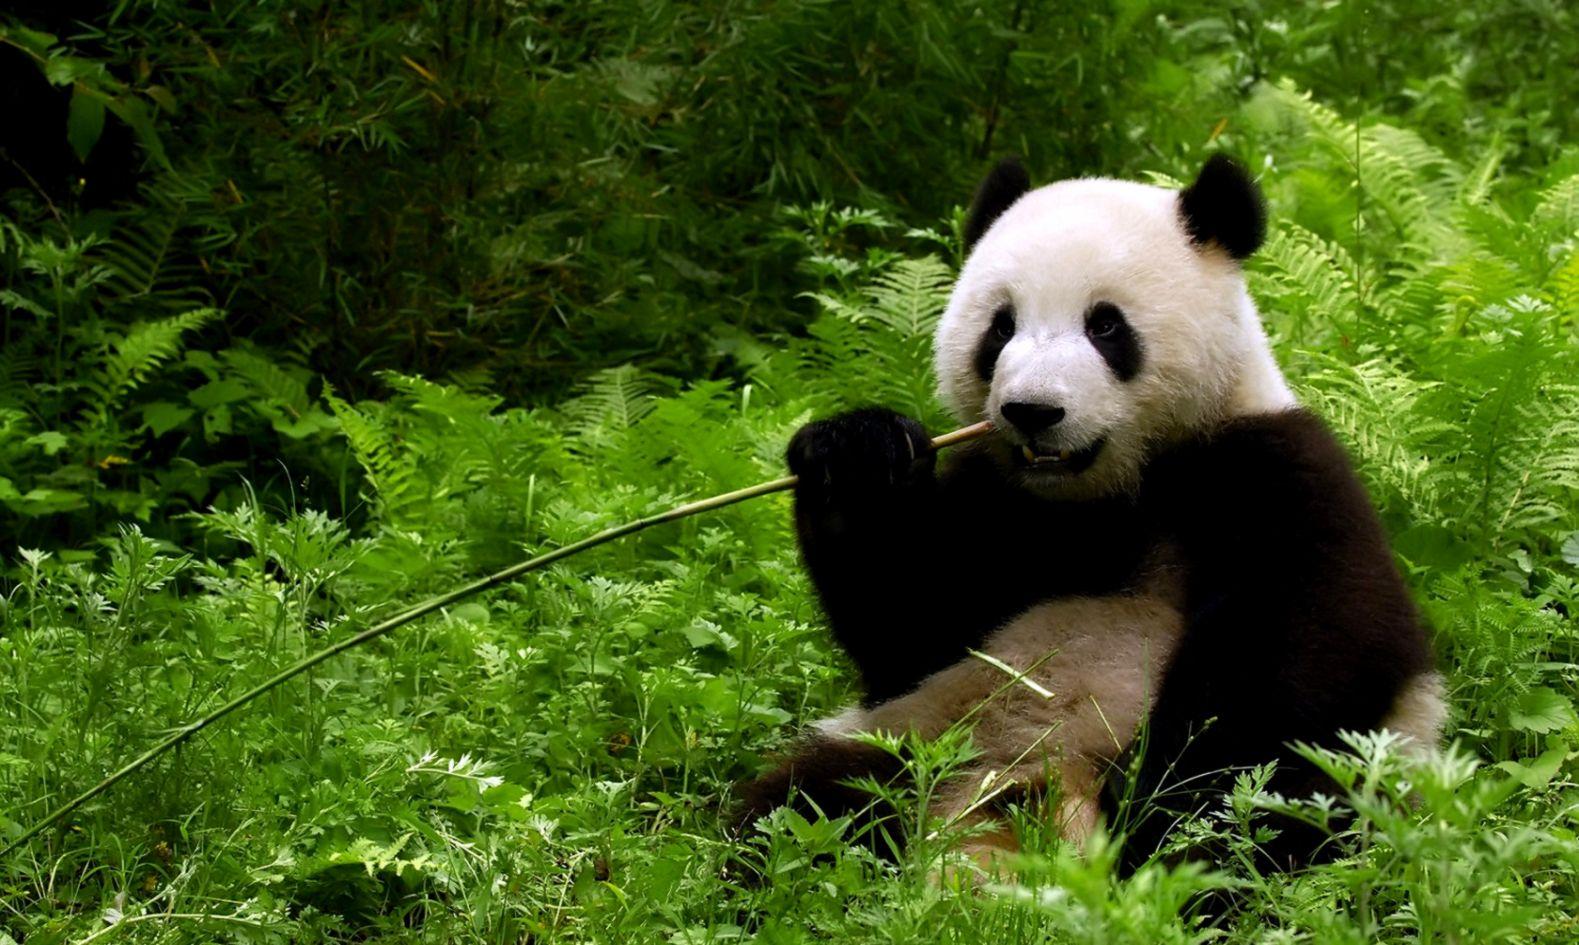 panda bear wallpaper